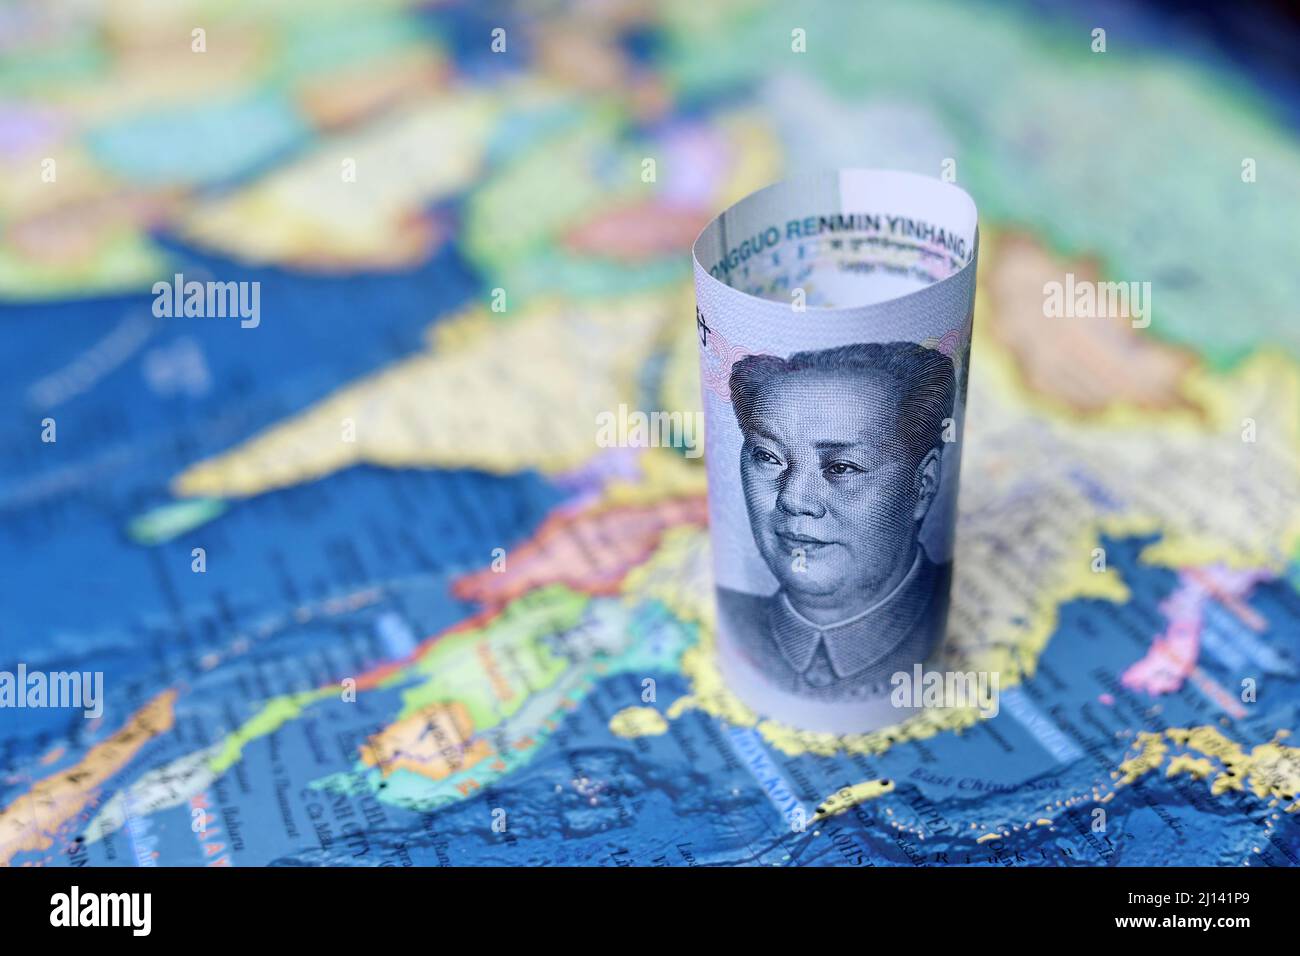 Monnaie chinoise en yuan sur la carte de la Chine. Concept de l'économie chinoise et asiatique, conflit politique sur Taiwan Banque D'Images